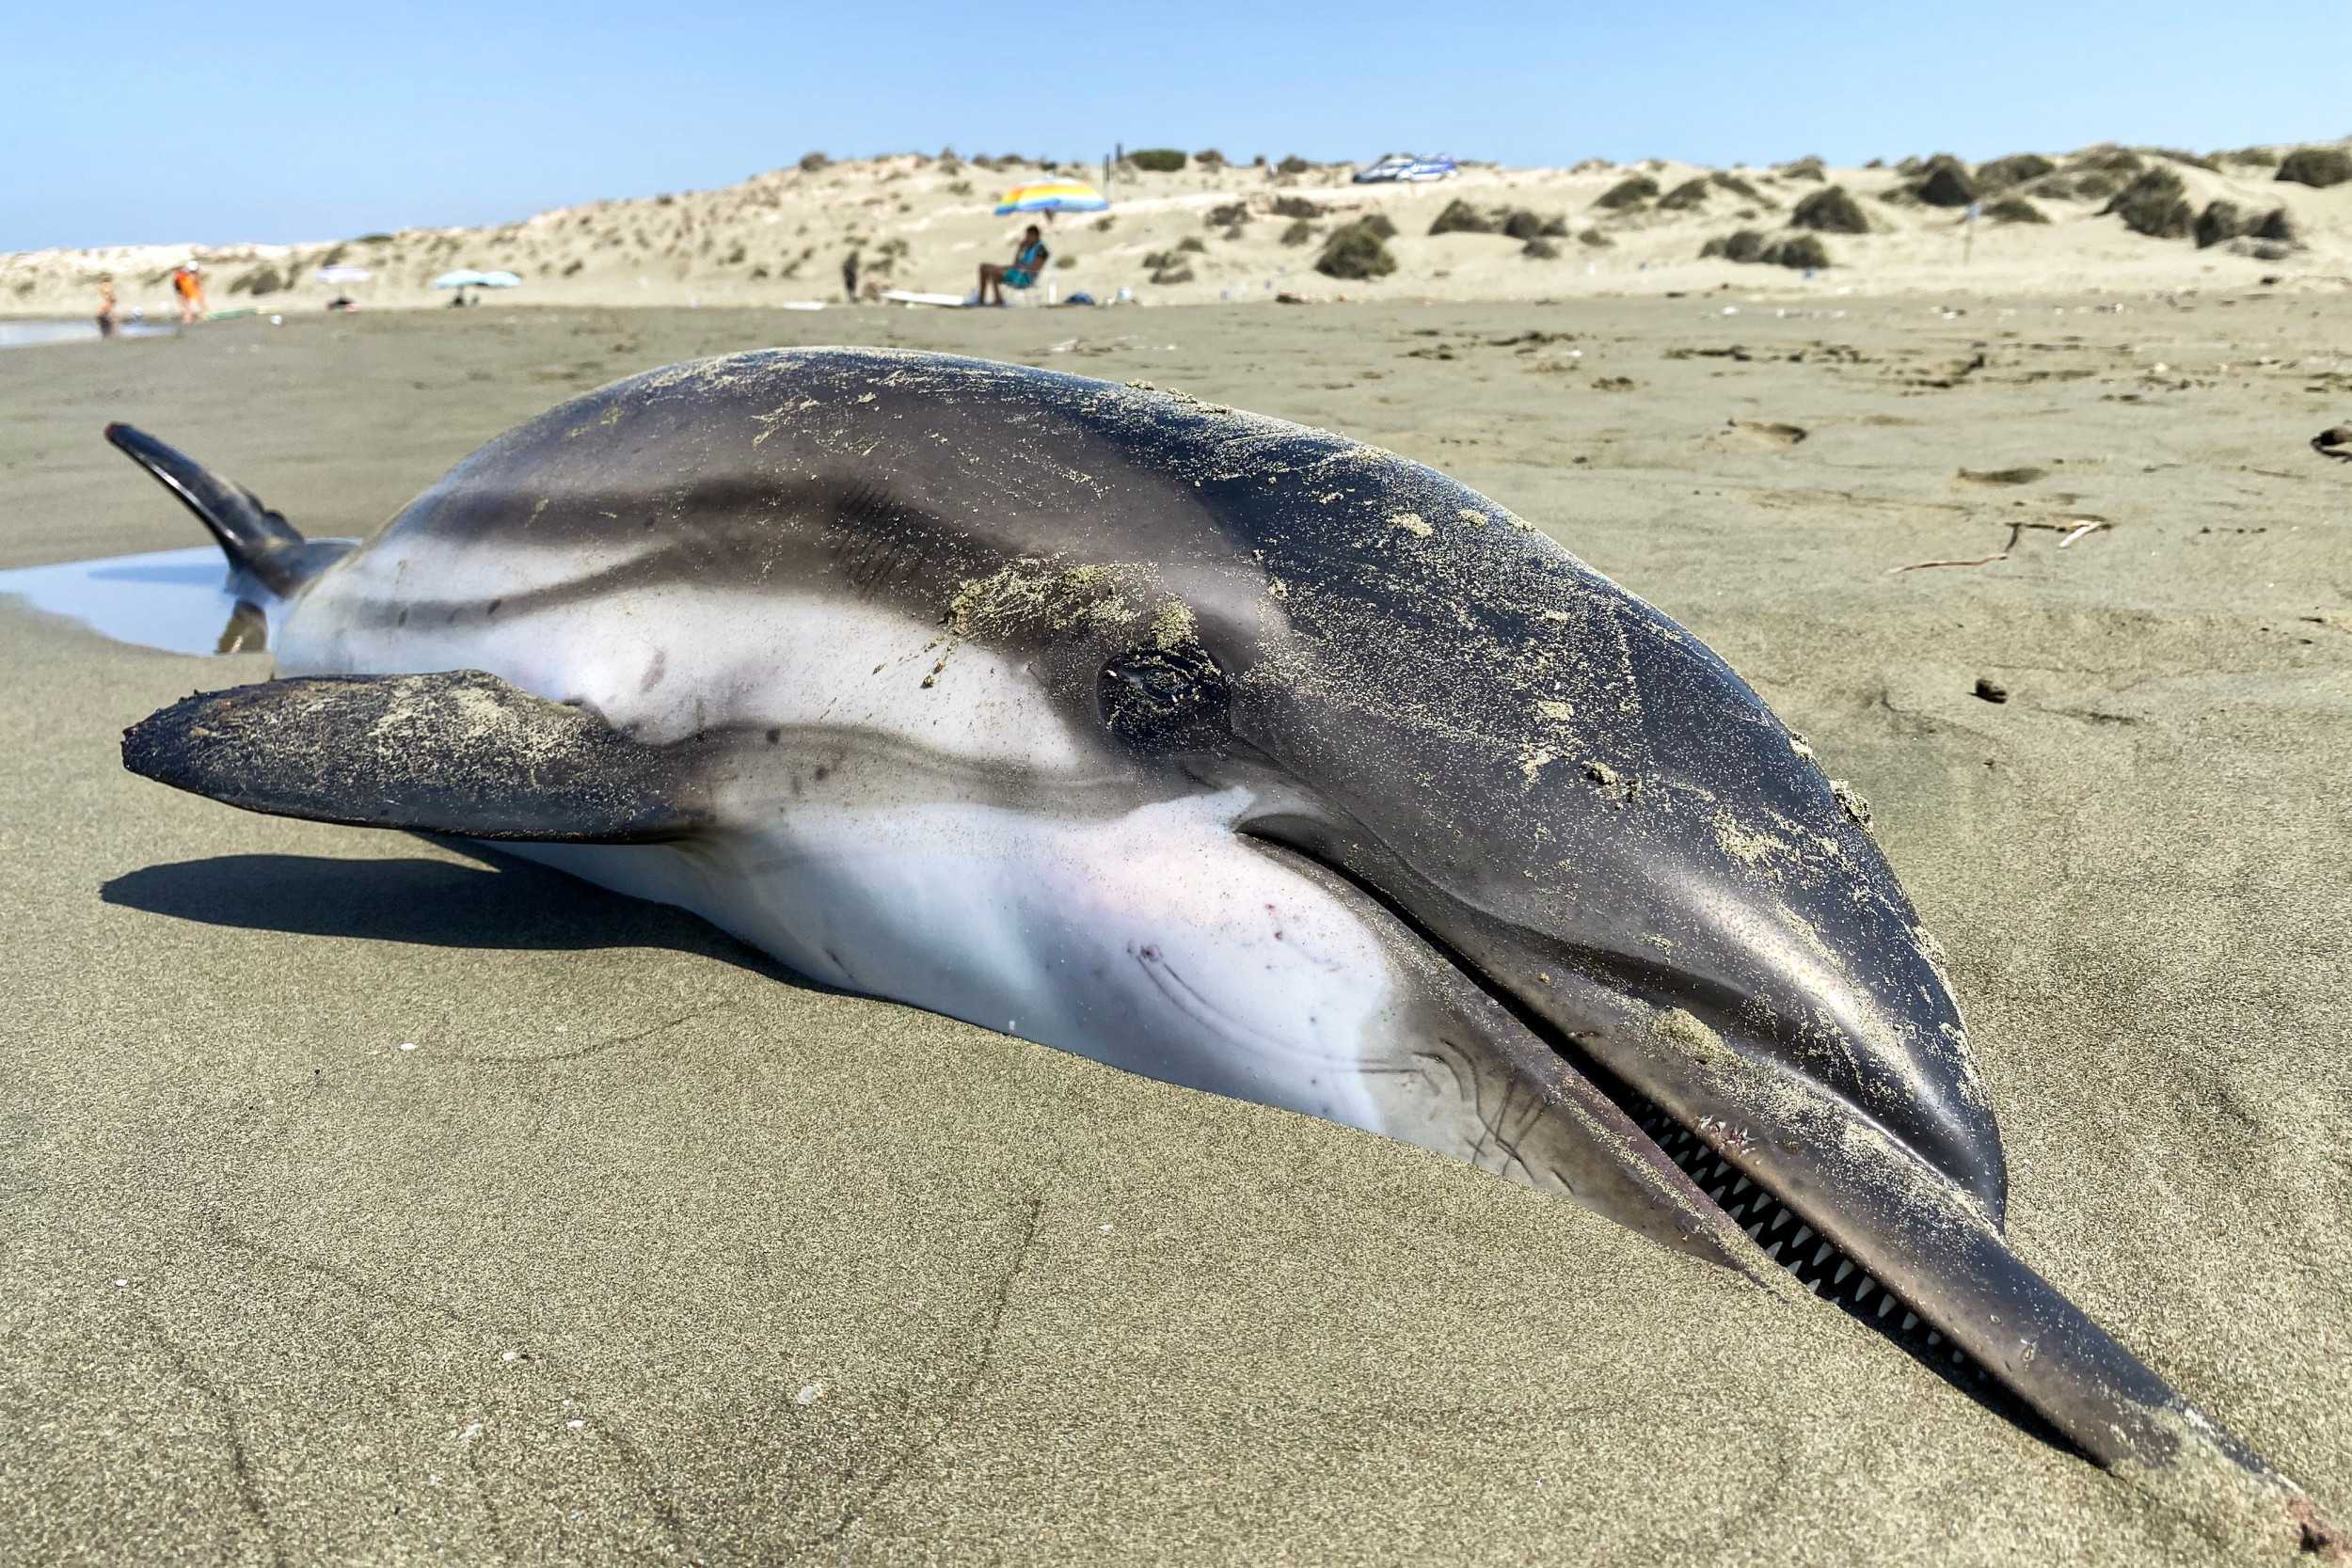 Mystery as Six Dolphins Found Dead on Beach